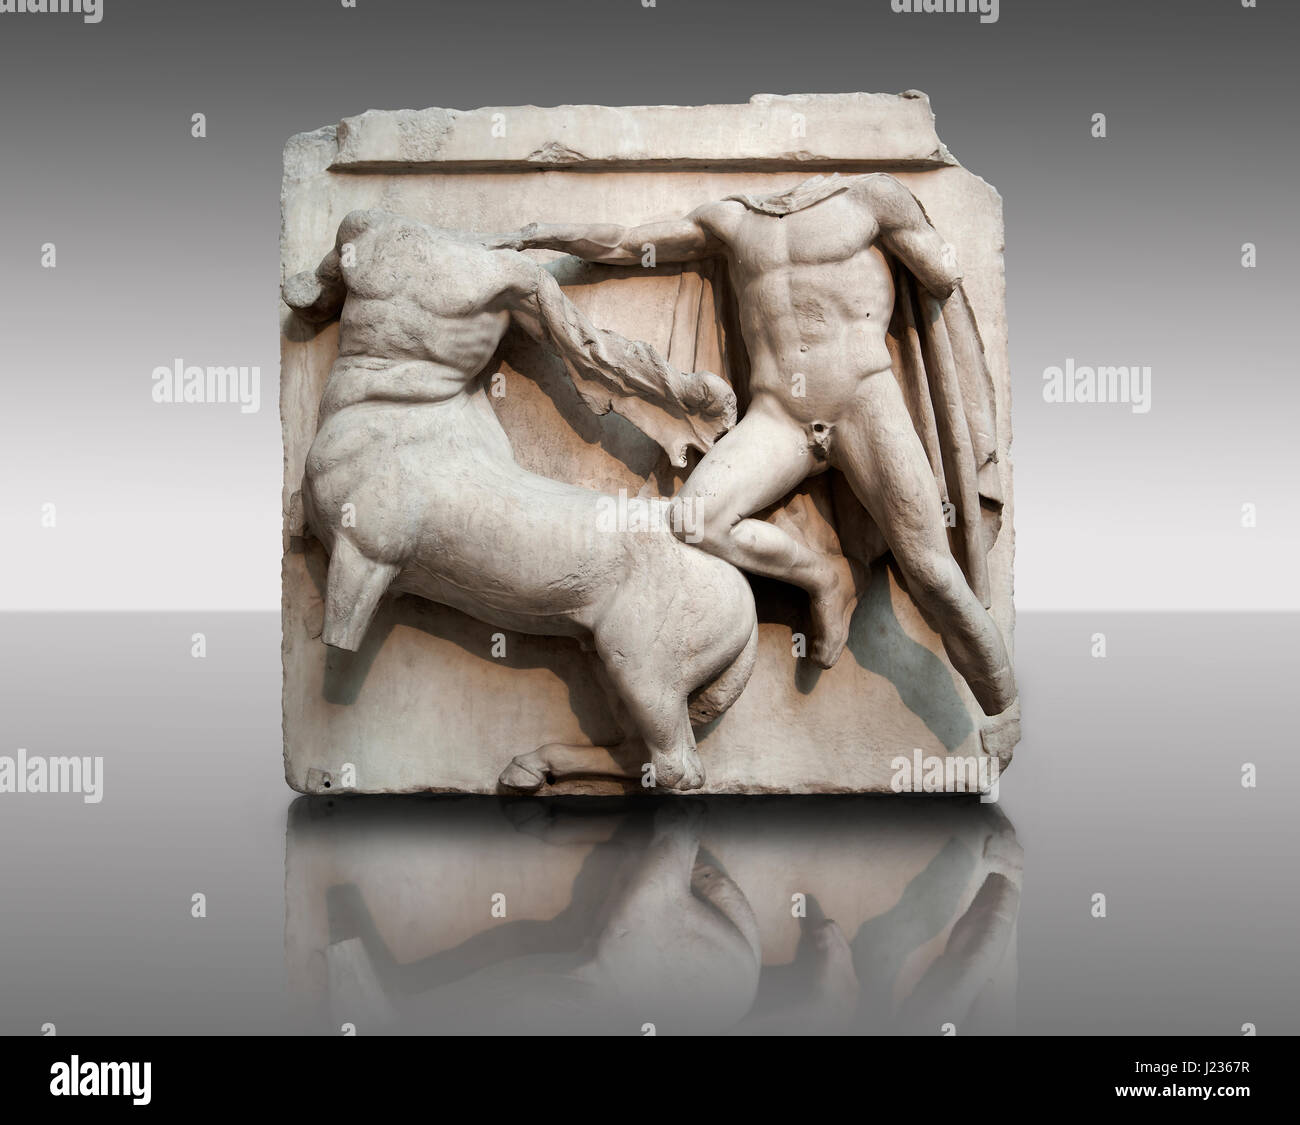 Skulptur von Lapiths und Zentauren kämpfen aus der Metope des Parthenon auf der Akropolis von Athen Nr. III. Auch bekannt als die Elgin Marbles. Briti Stockfoto